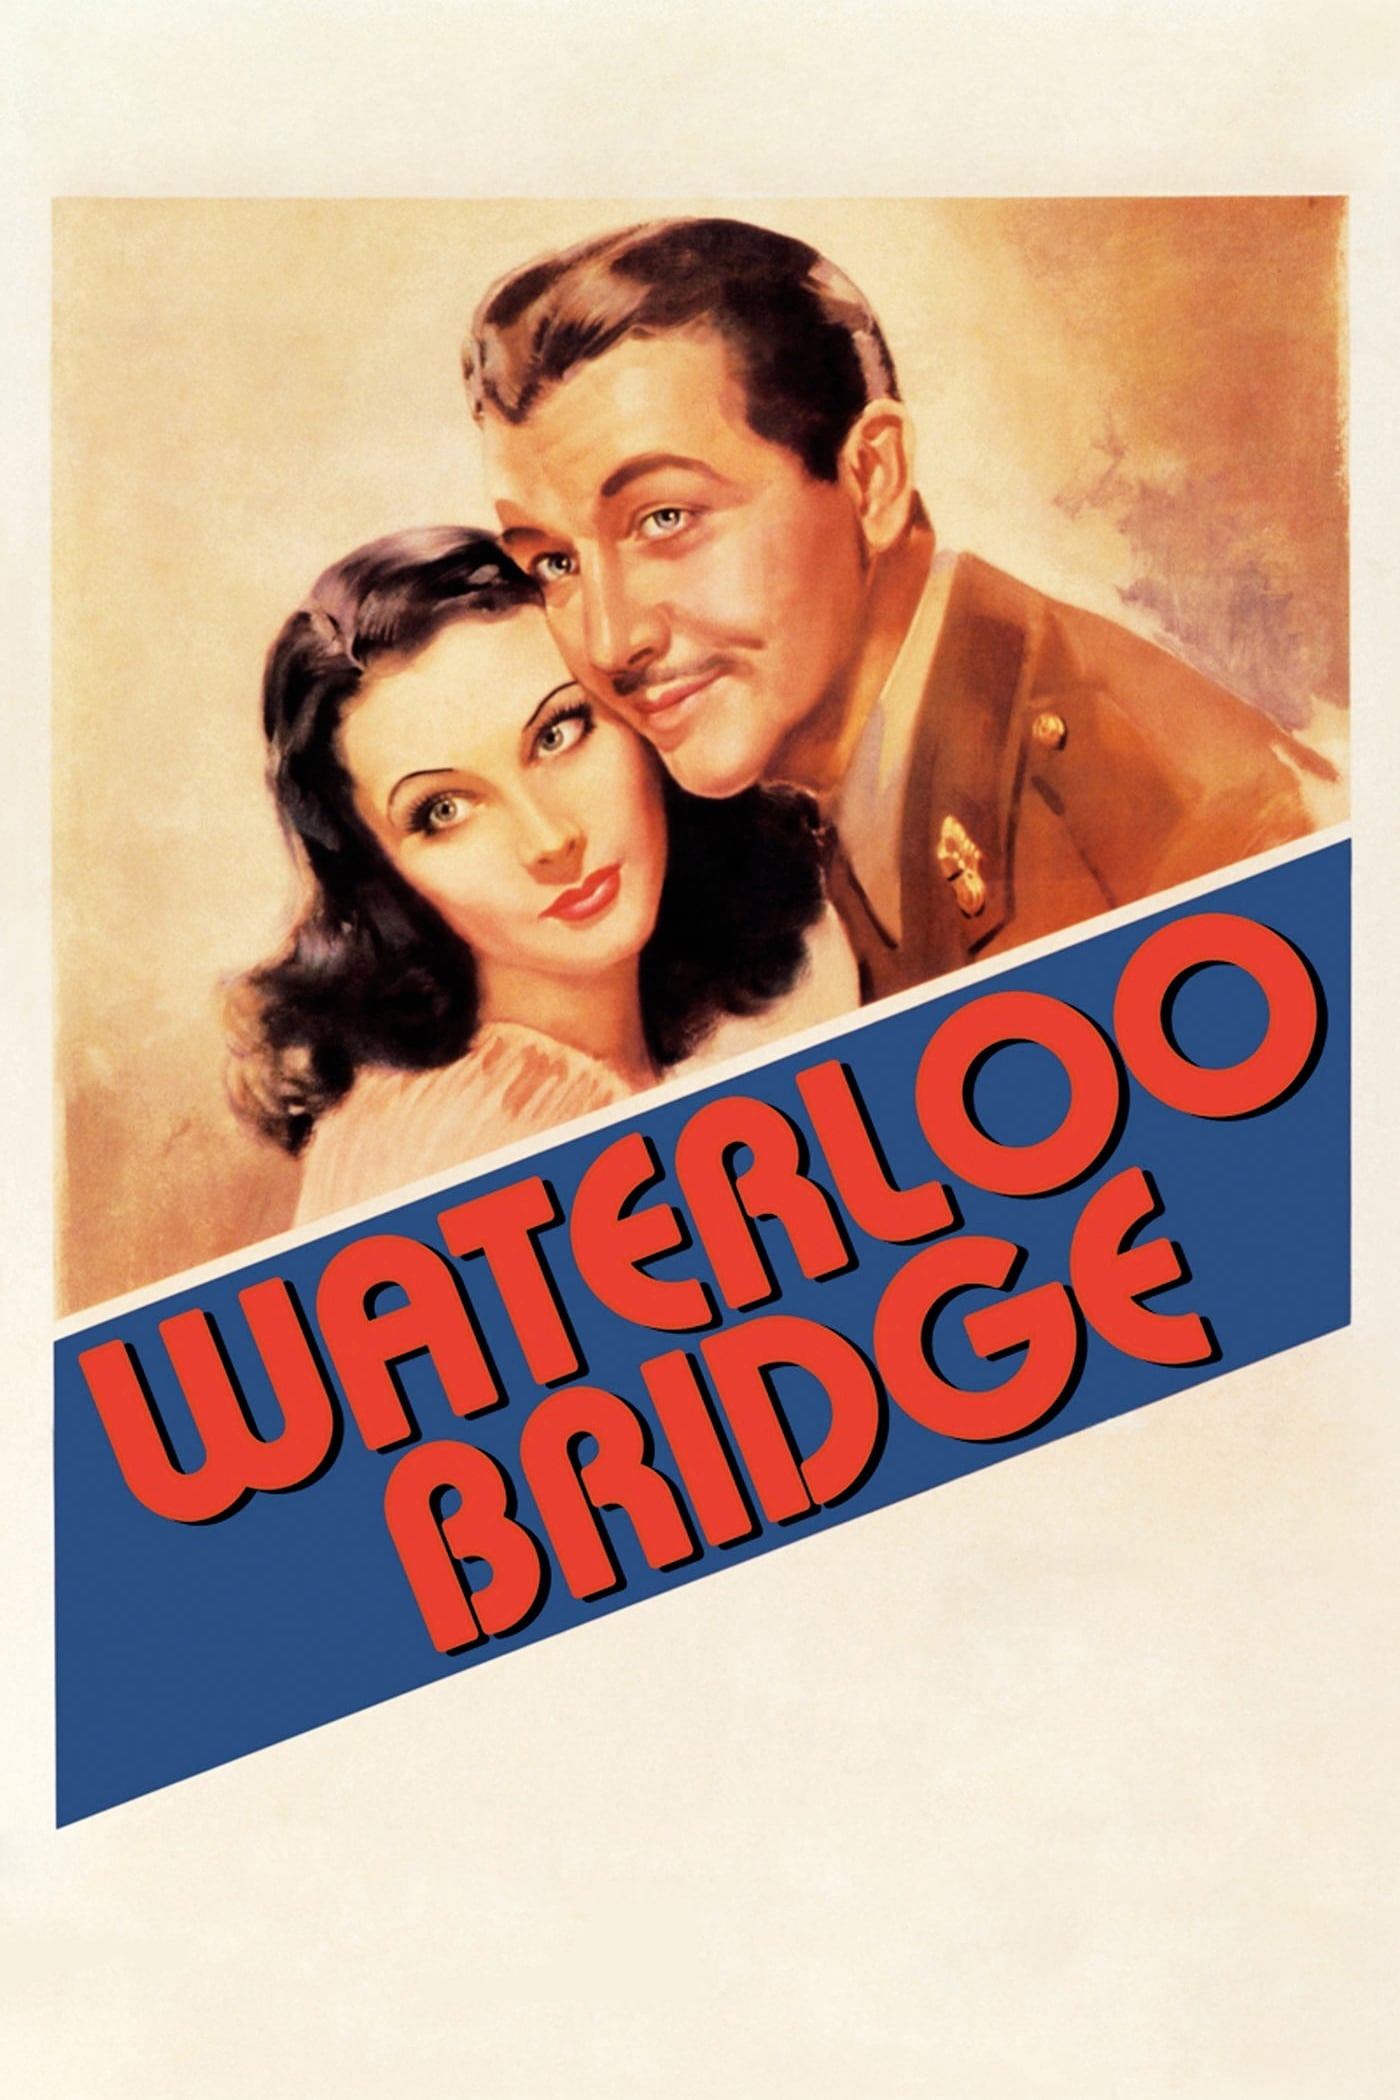 A Ponte de Waterloo (1940)